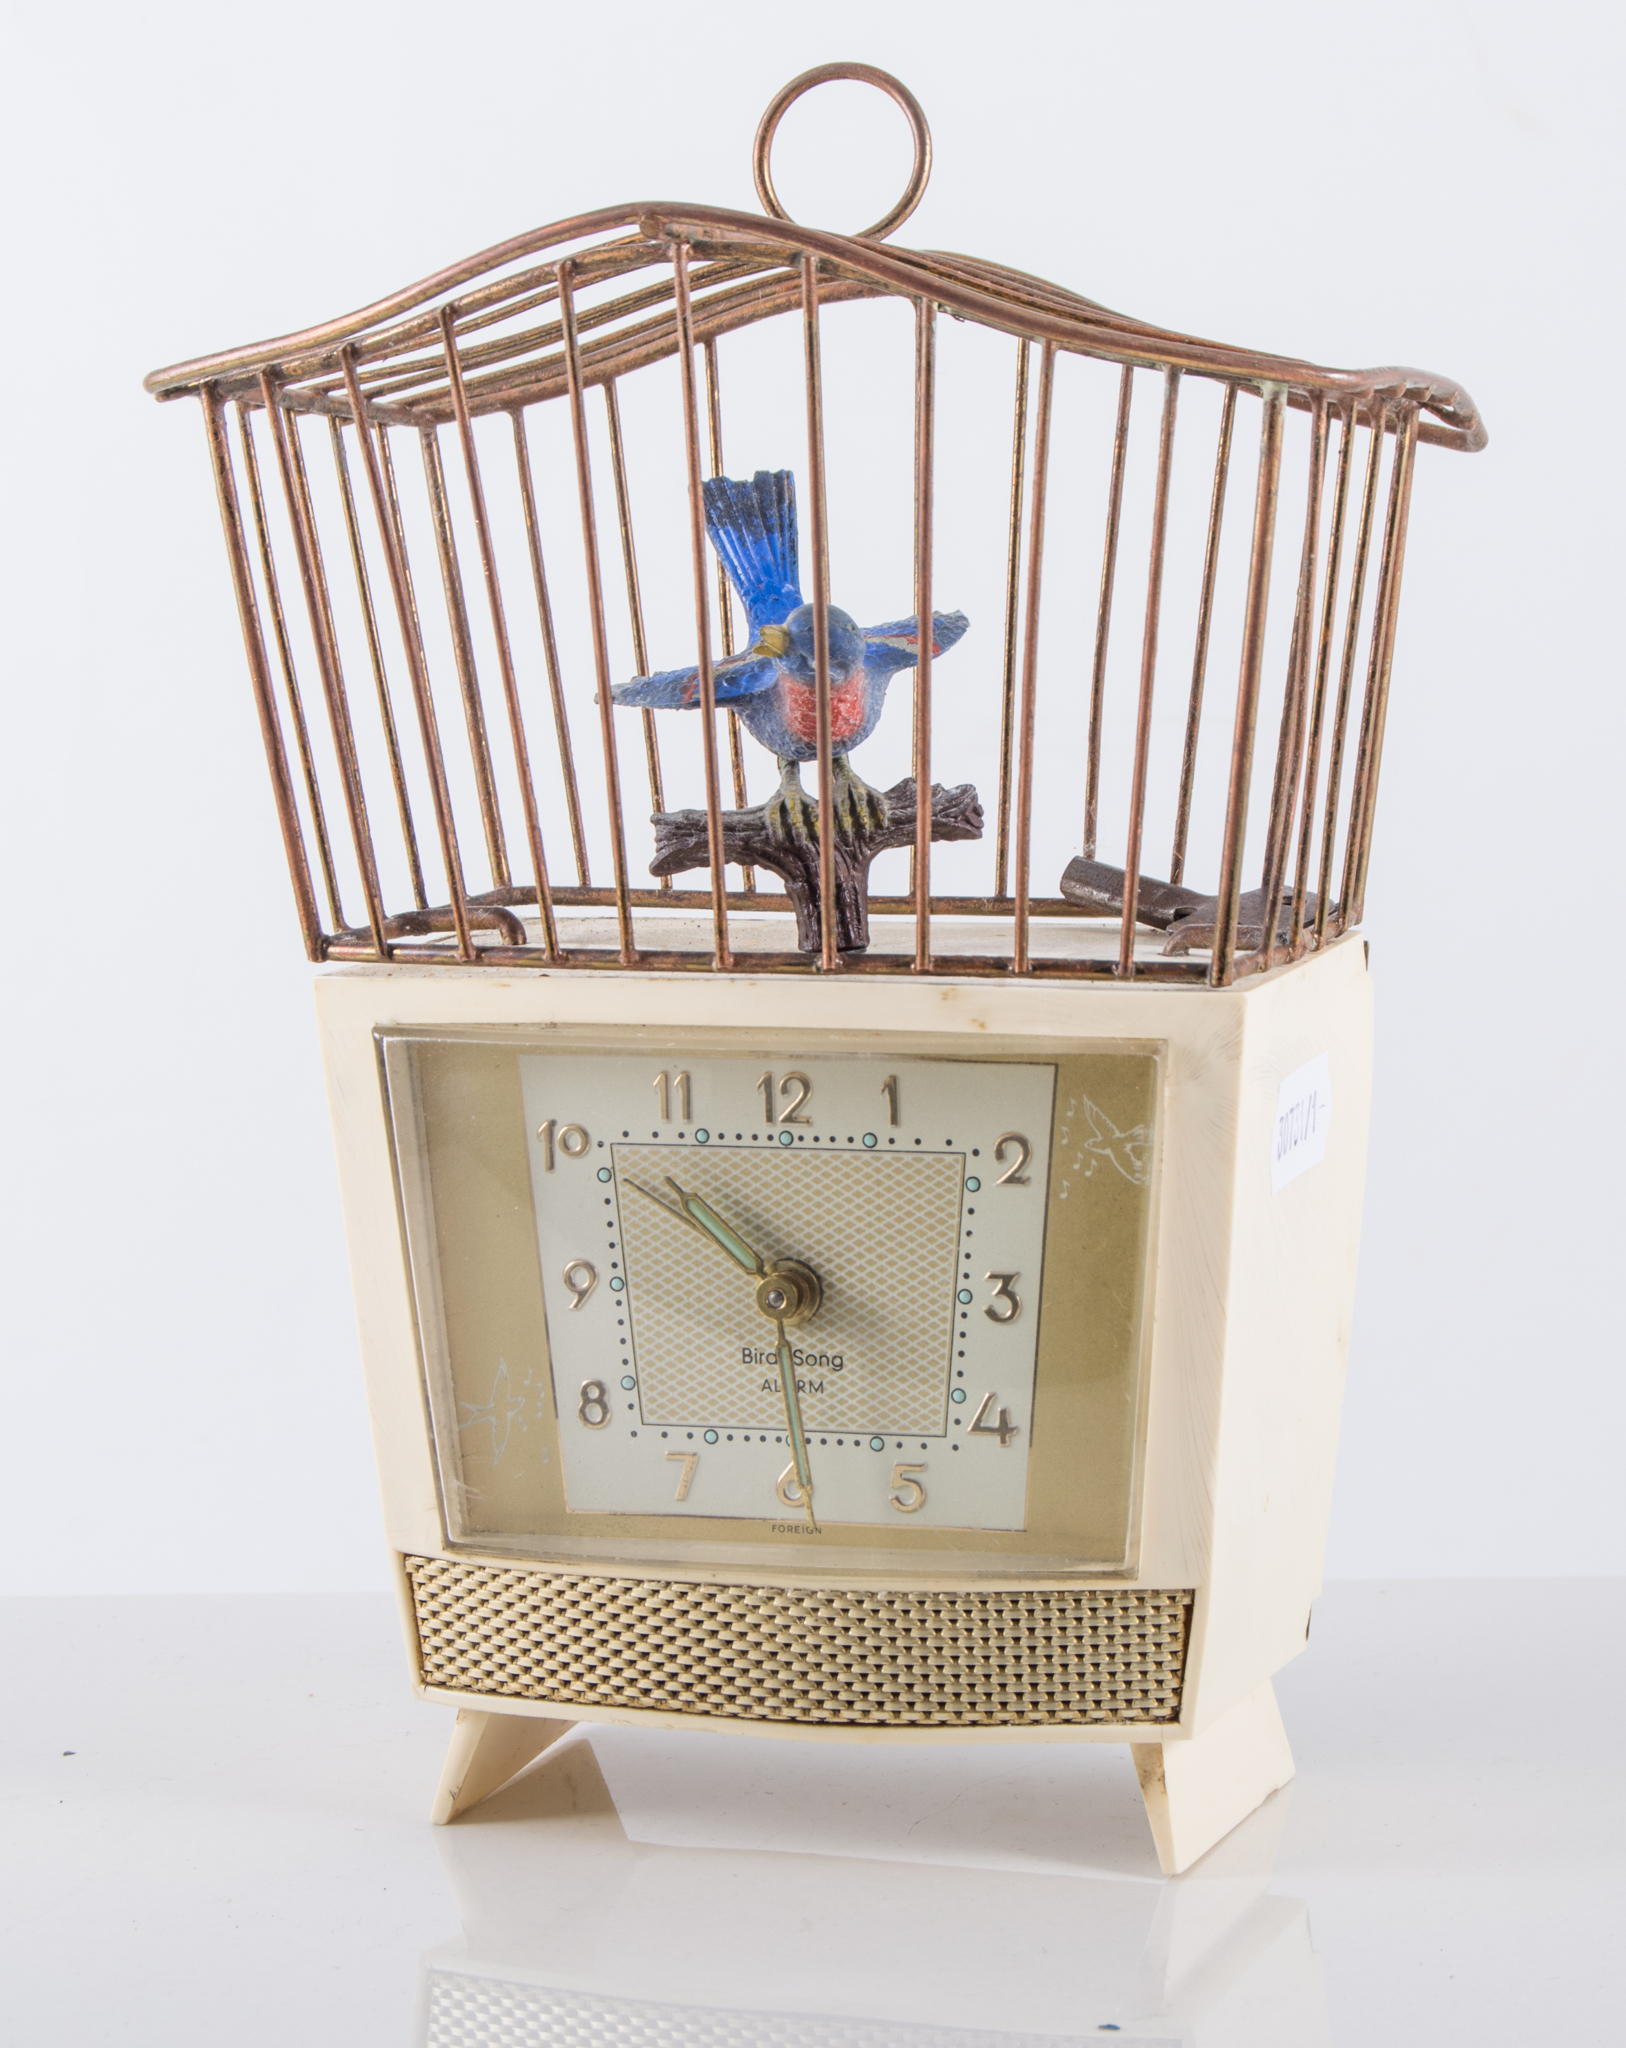 Bird Song Automaton Alarm Clock, cream plastic clock with Arabic numerals and luminous hands,